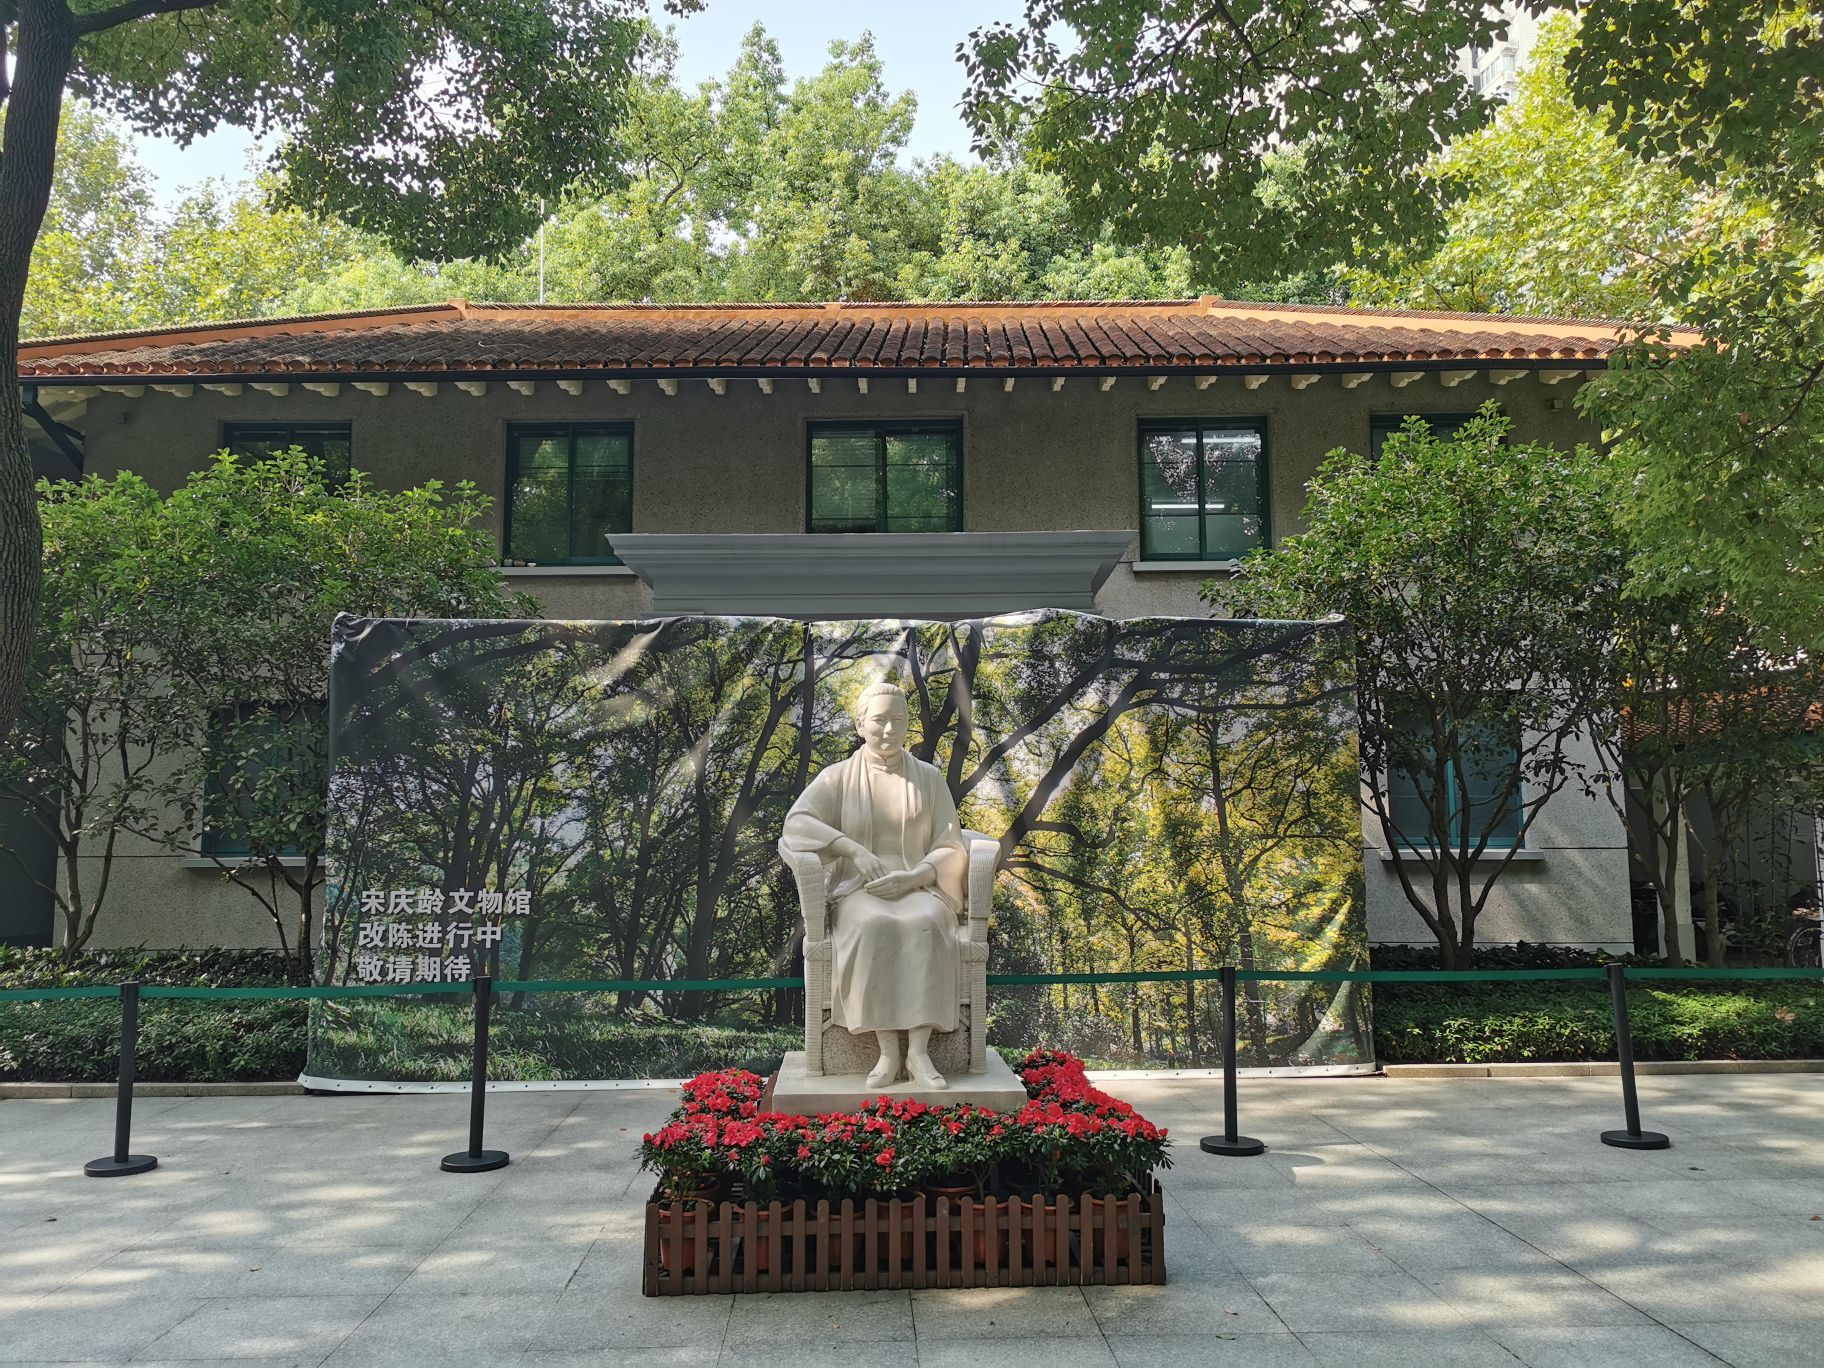 上海宋庆龄故居纪念馆完成修缮恢复开放 - 中国日报网